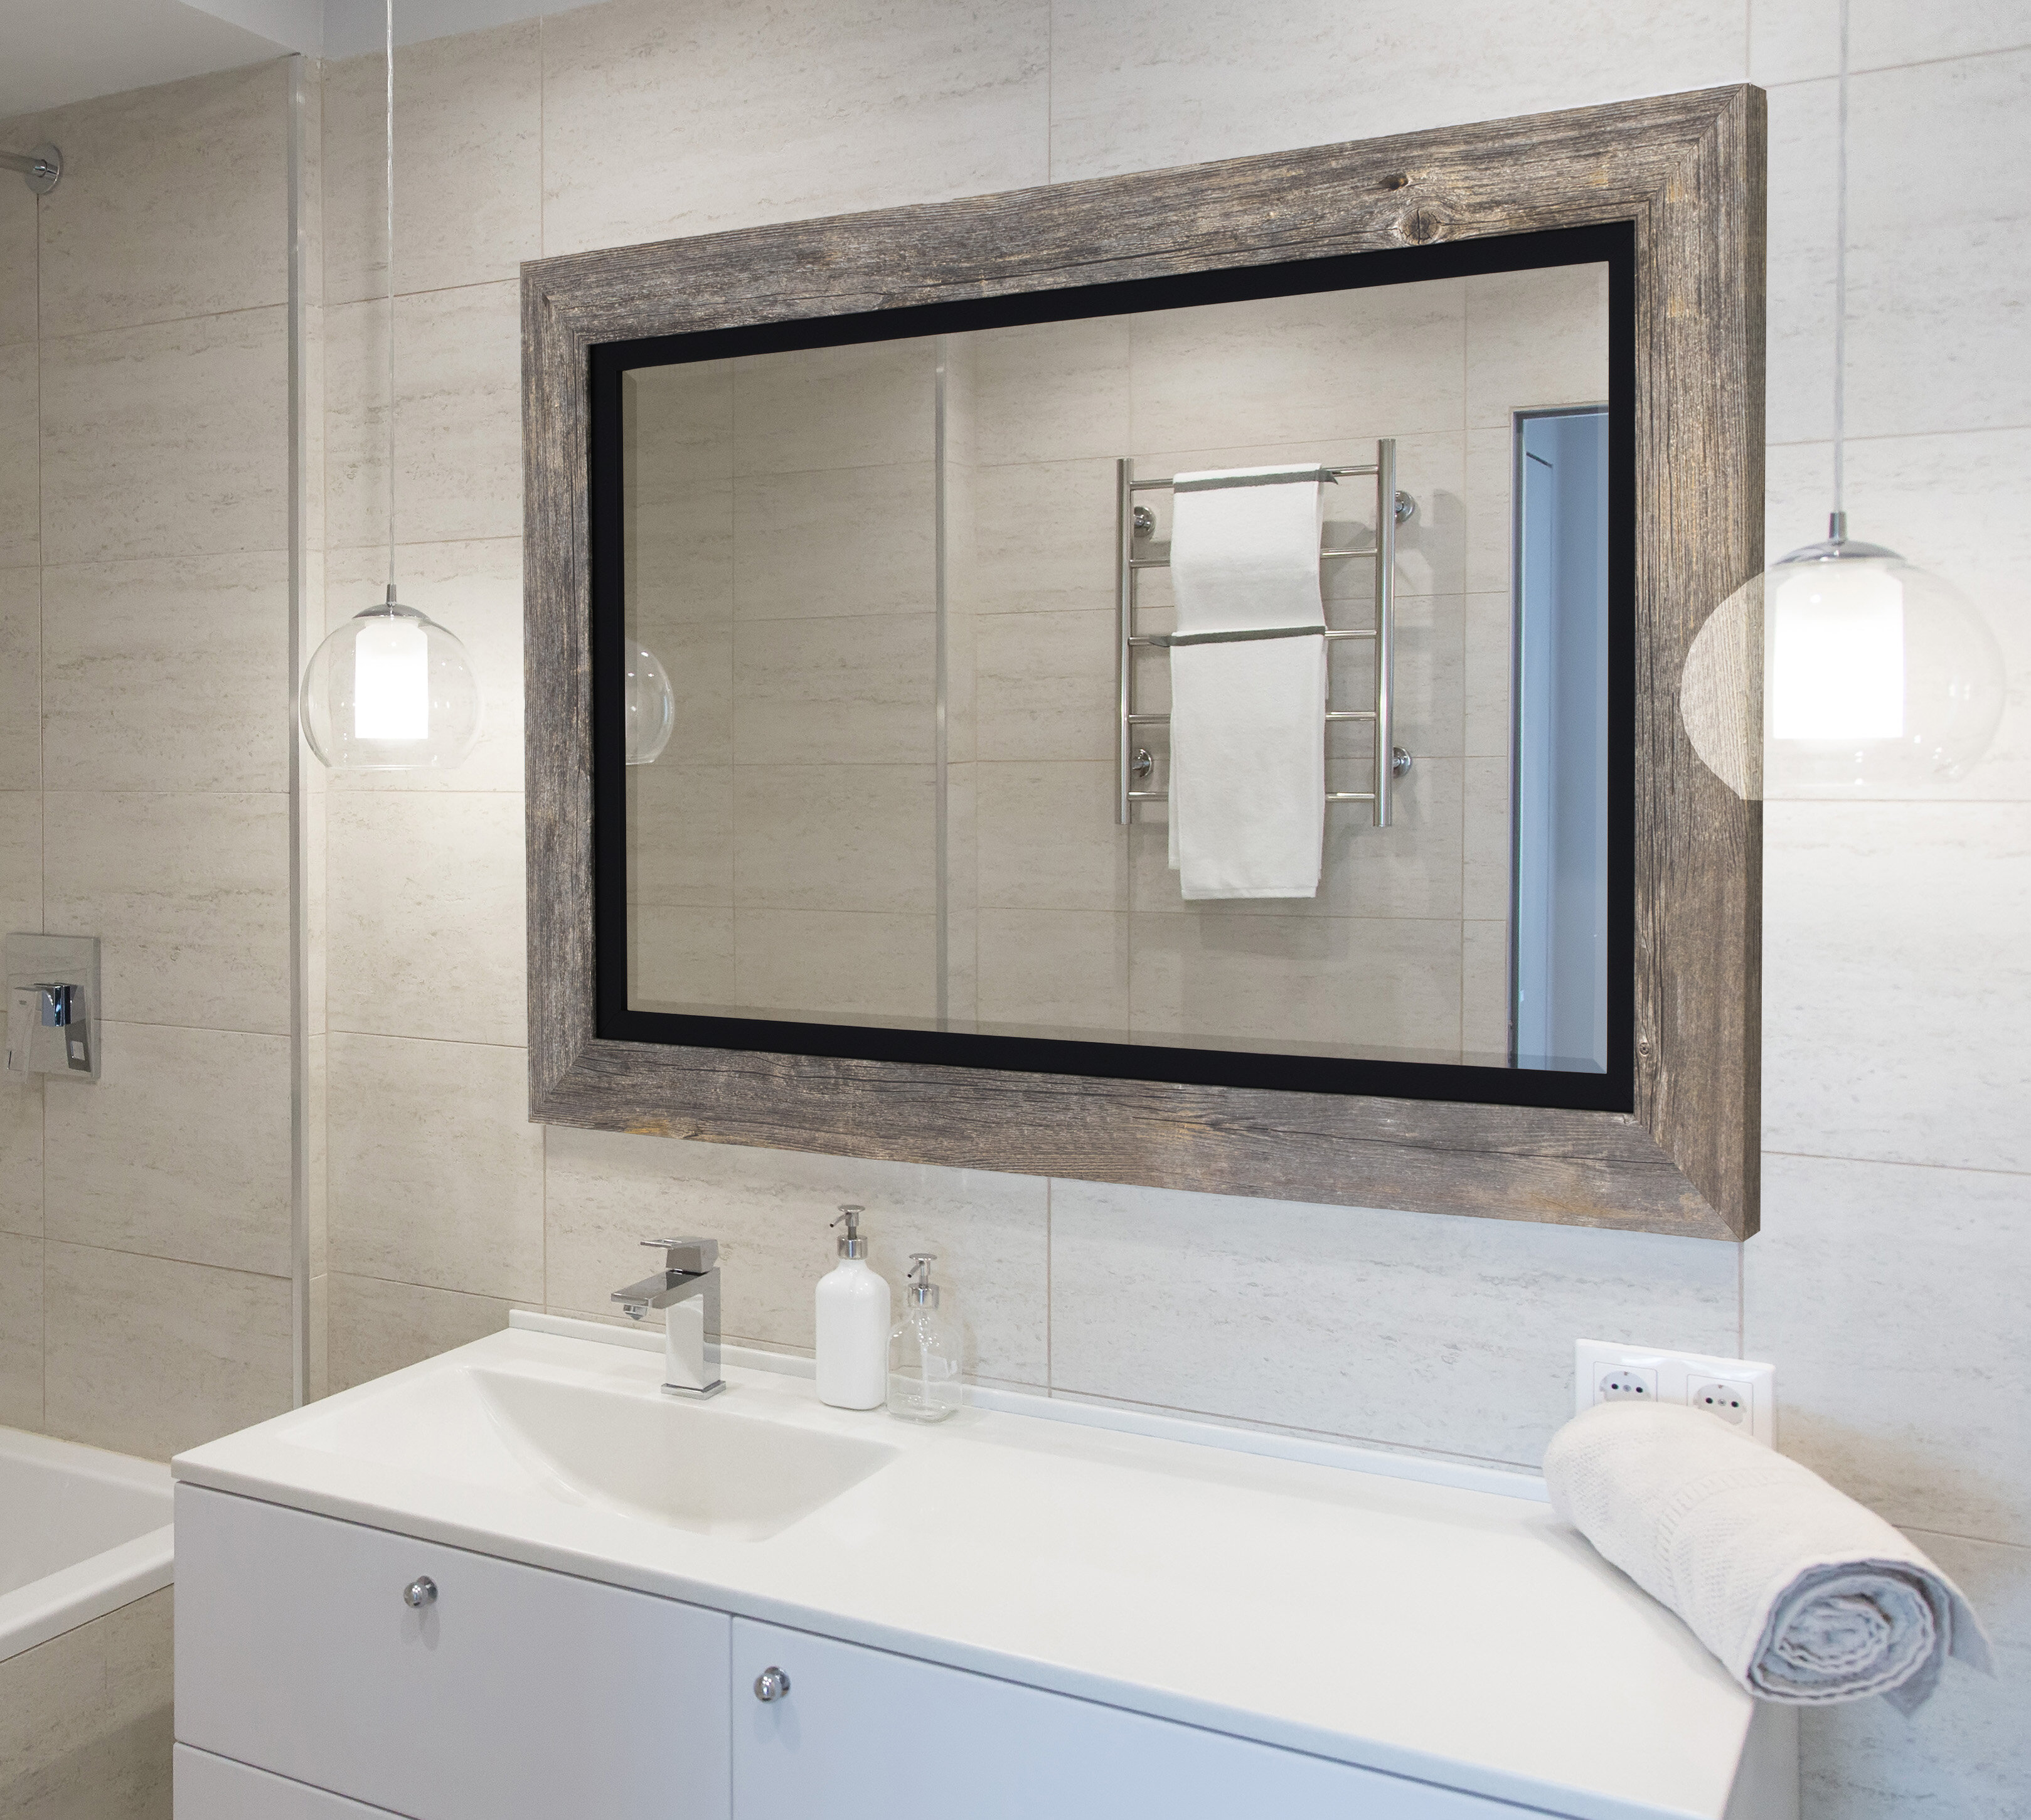 Longshore Tides Hilde Traditional Beveled Distressed Bathroom Vanity Mirror Reviews Wayfair